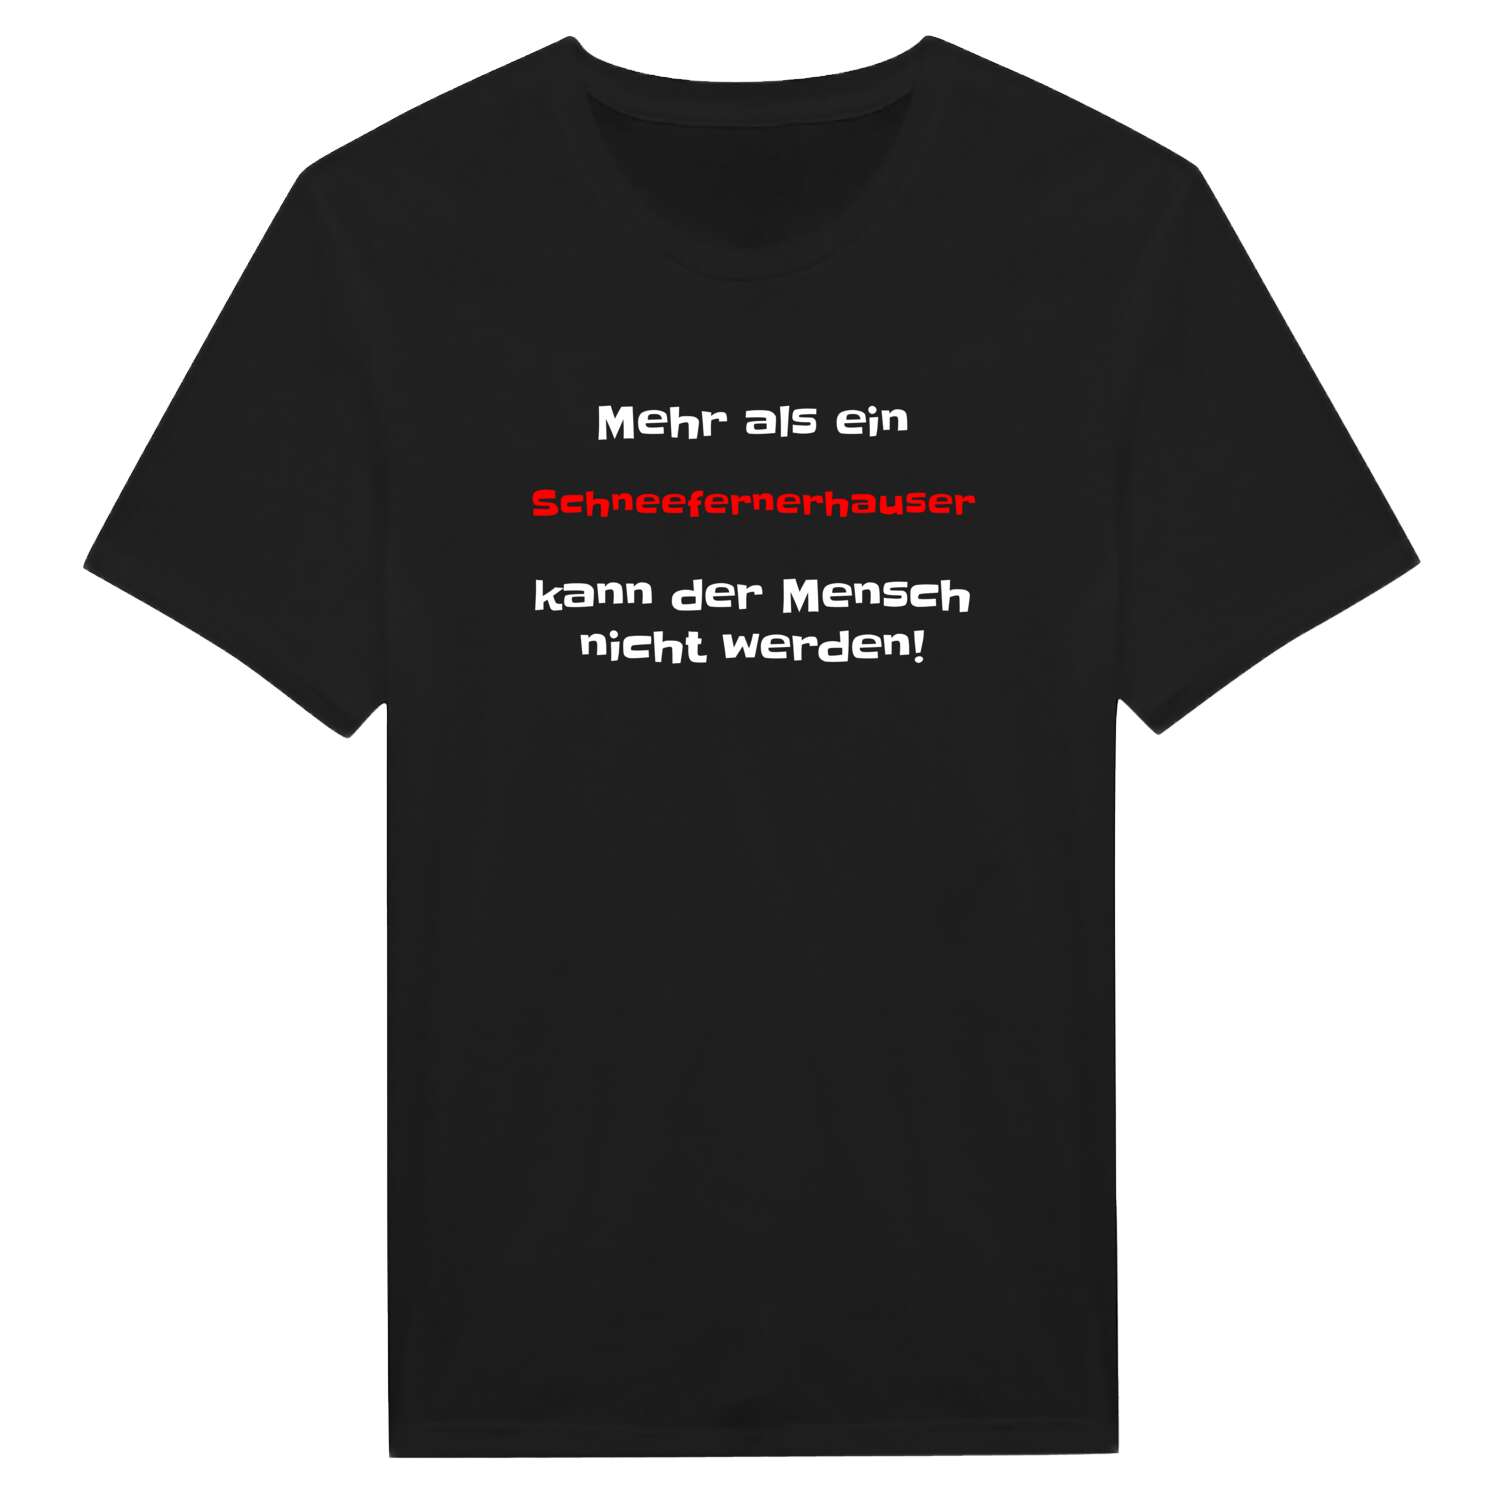 Schneefernerhaus T-Shirt »Mehr als ein«